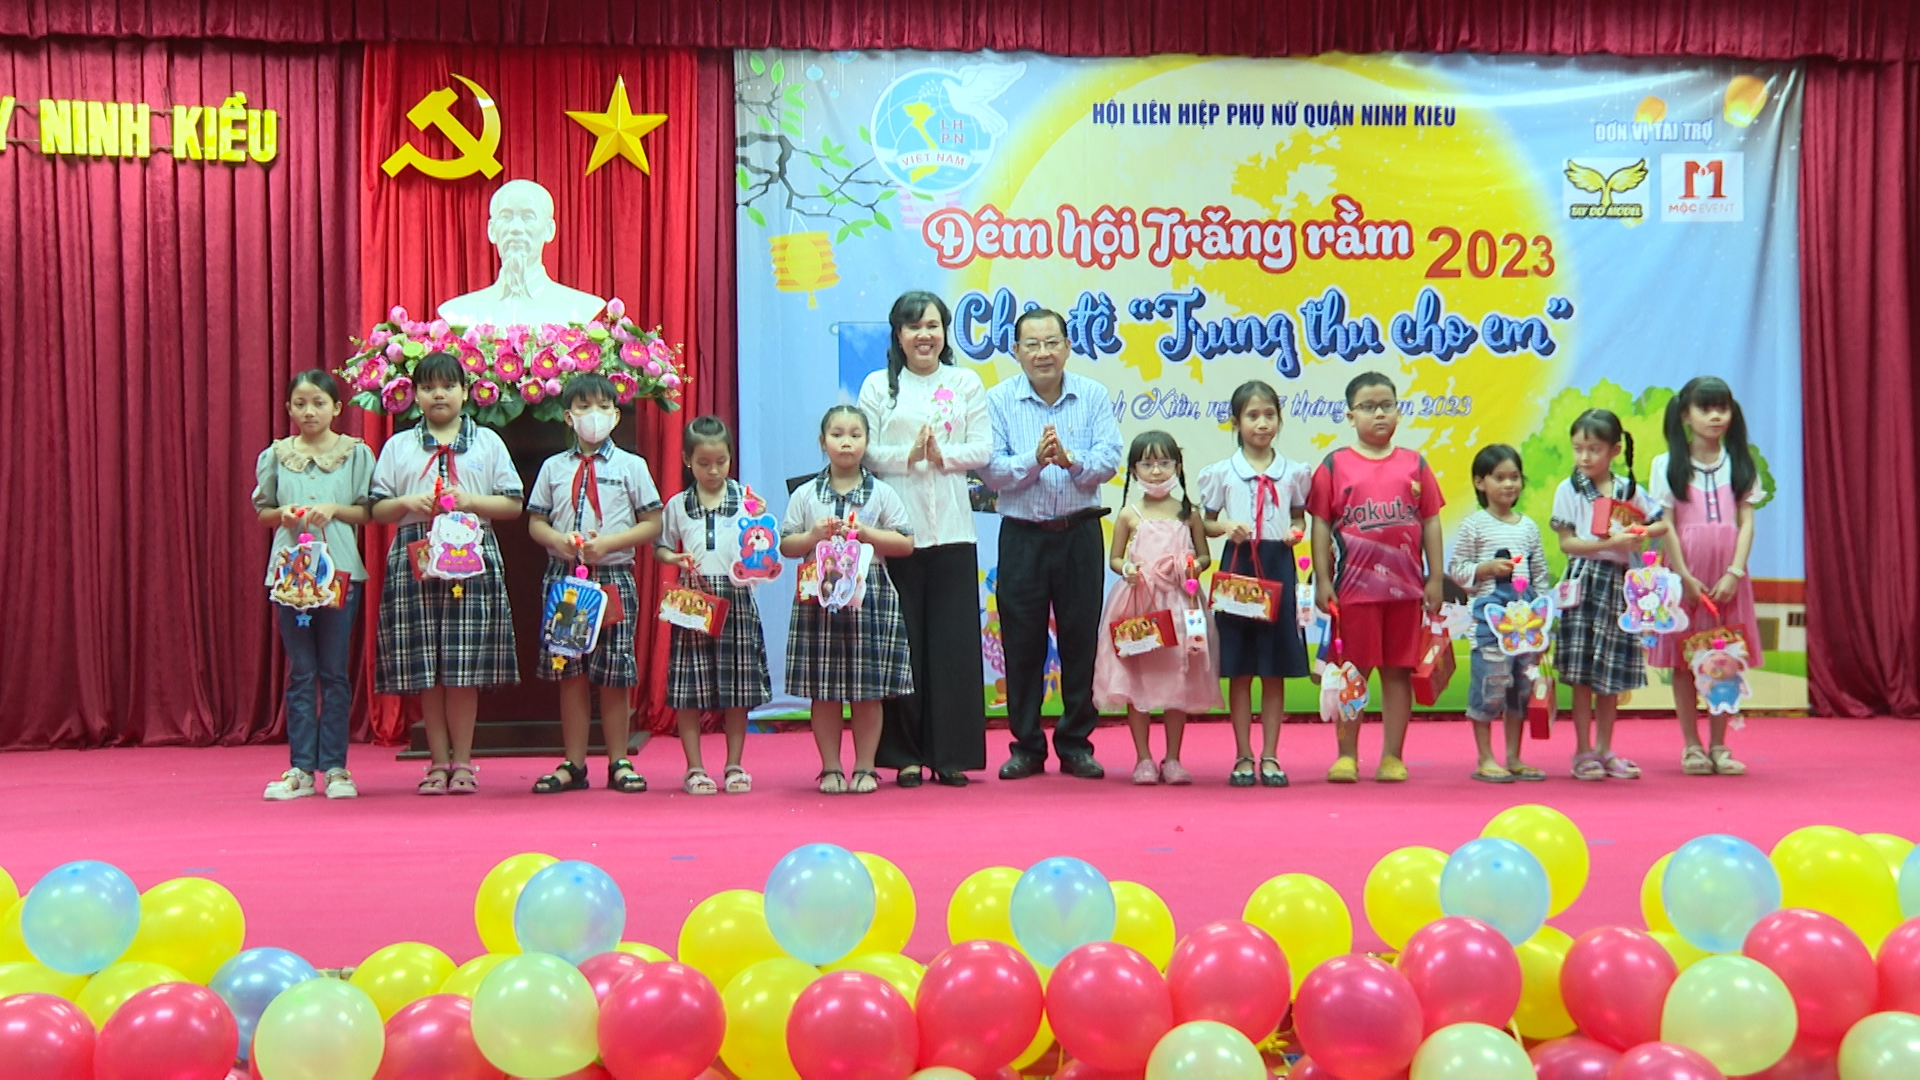 Bà Võ Kim Thoa, chủ tịch Hội LHPN thành phố, ông Trần Tiến Dũng, phó bí thư thường trực quận ủy Ninh Kiều tặng quà trung thu cho các bé